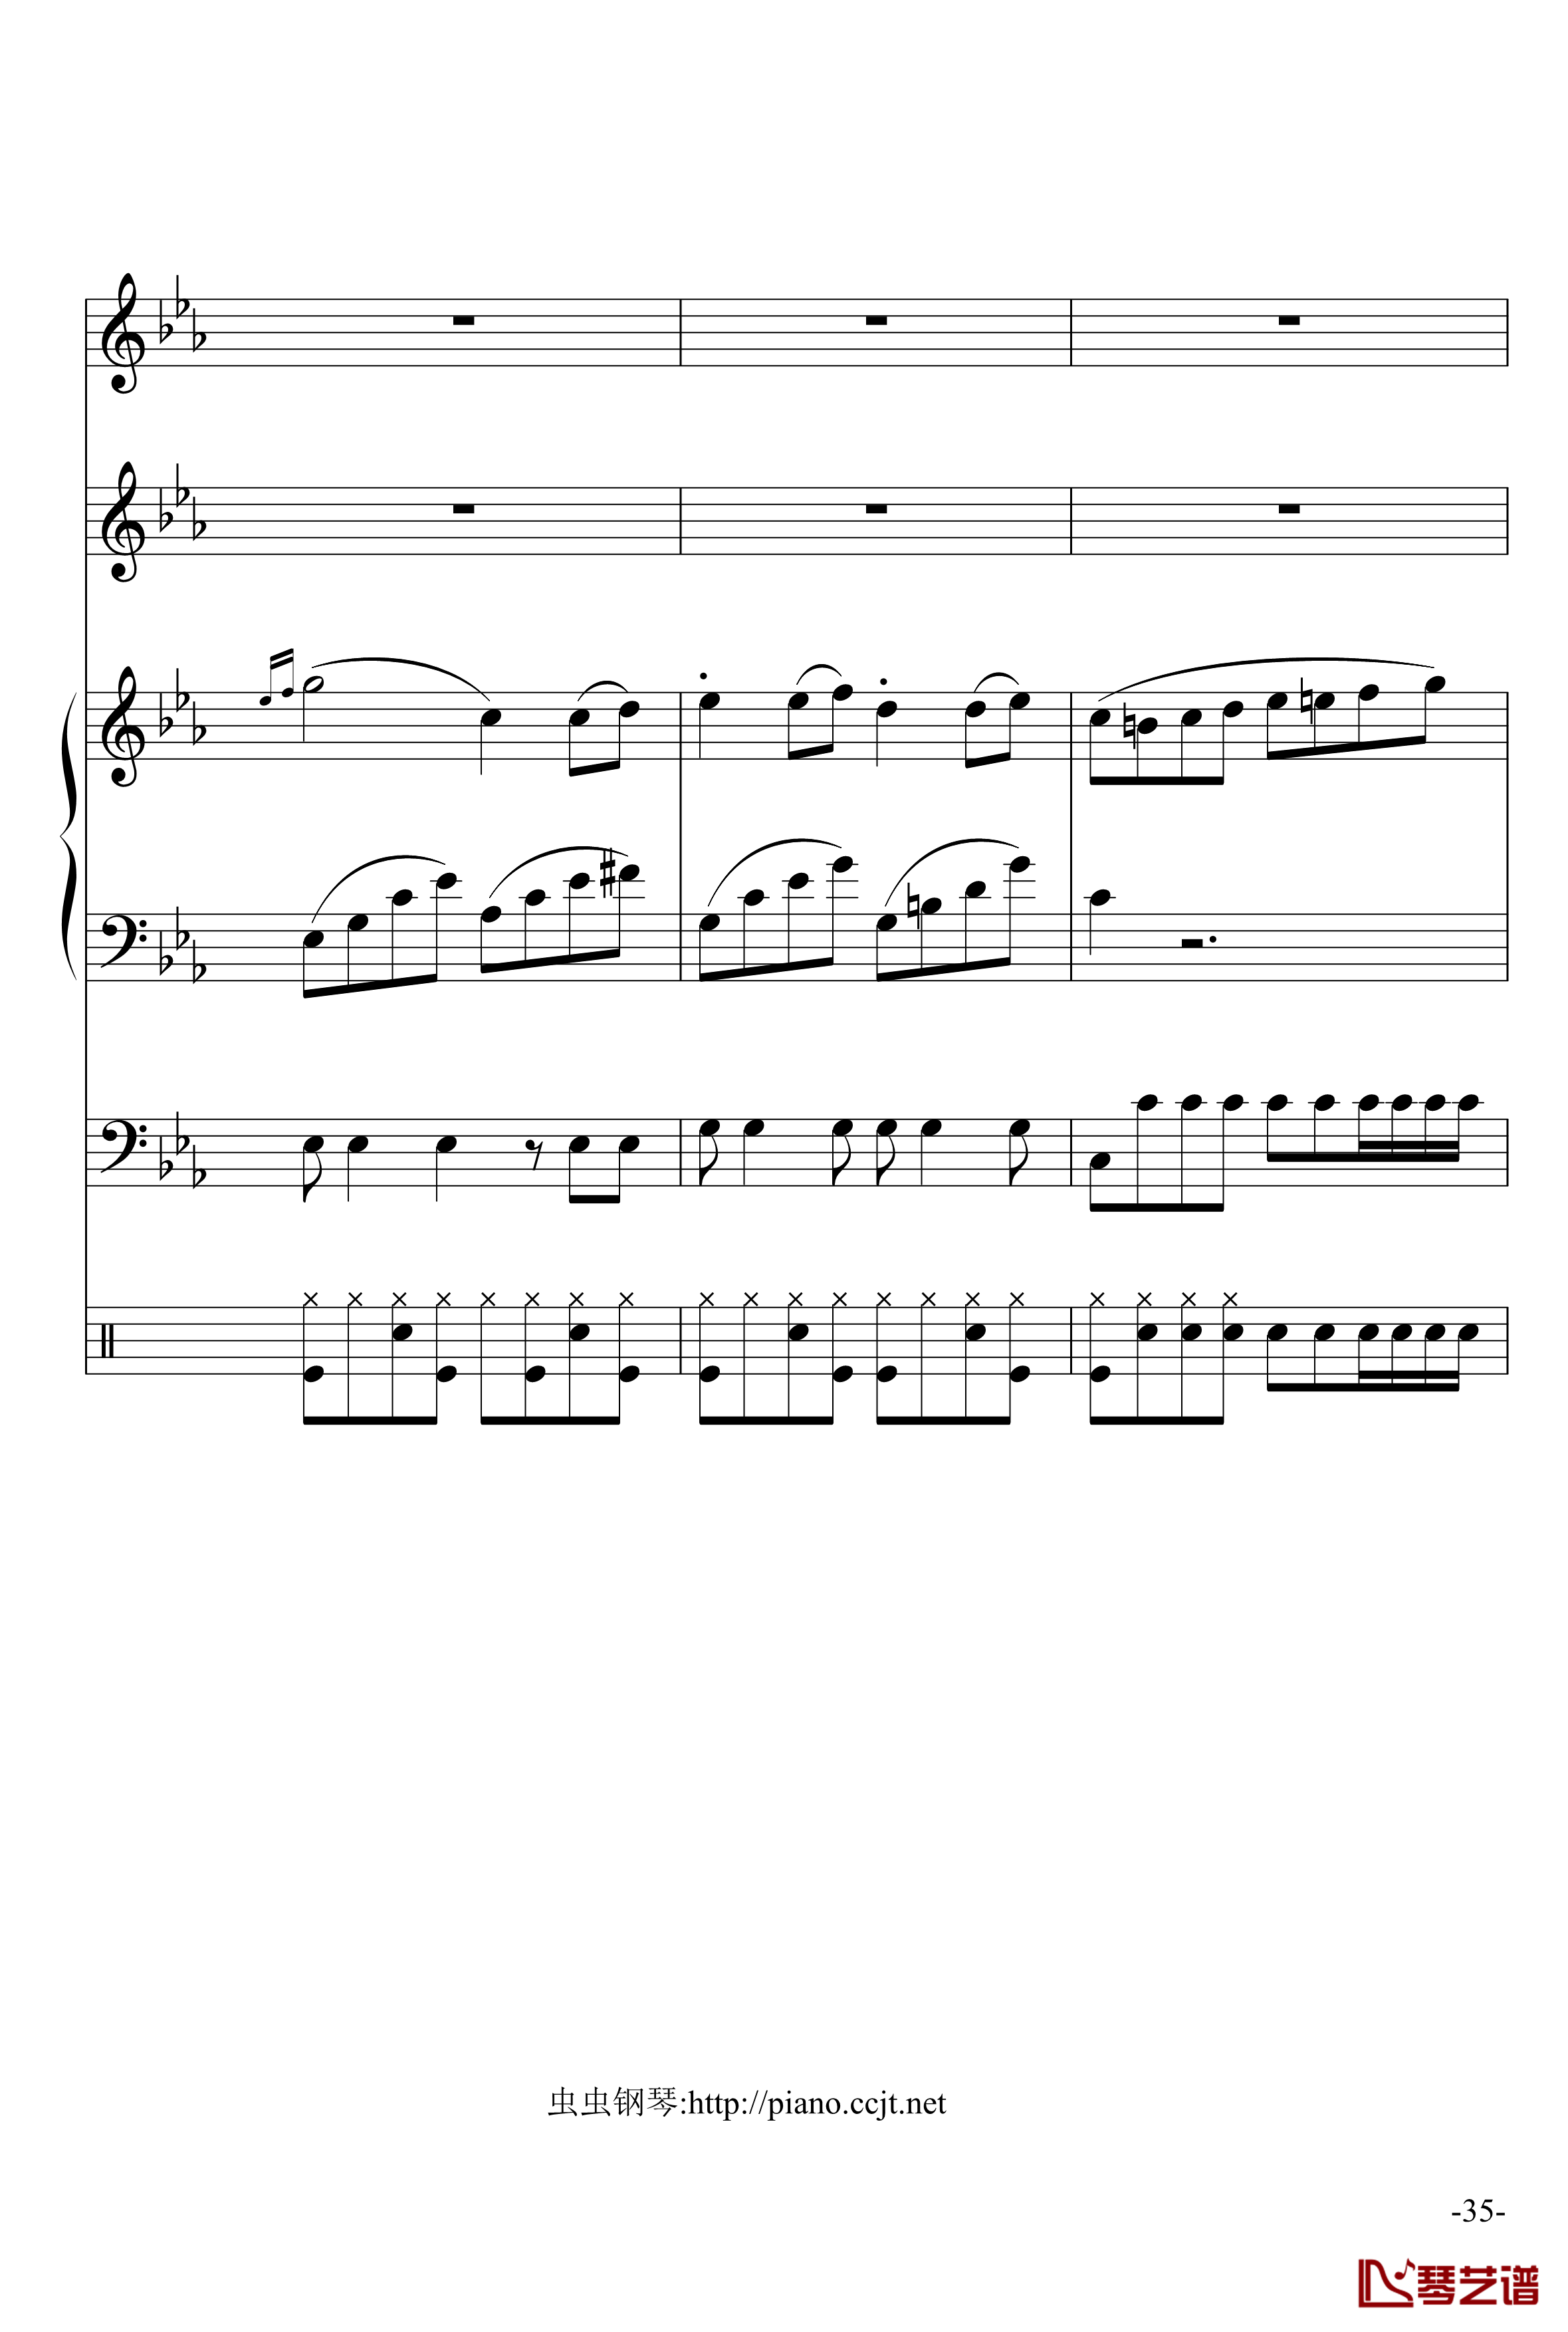 悲怆奏鸣曲钢琴谱-加小乐队-贝多芬-beethoven35